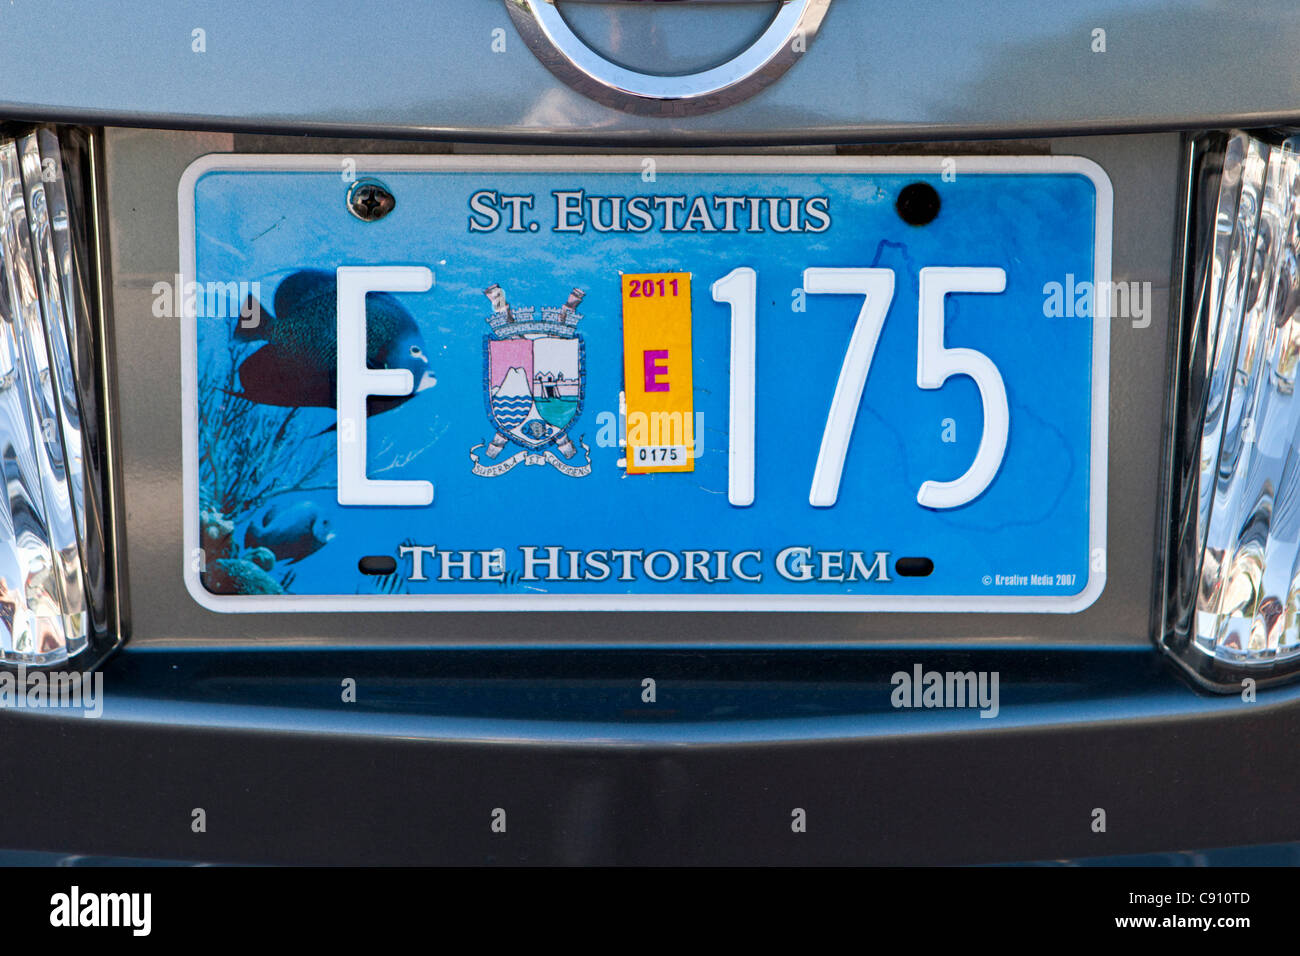 Oranjestad, Sint Eustatius Insel, Niederländische Karibik. Nummer oder Kfz-Kennzeichen mit der Insel den Spitznamen The Historic Gem. Stockfoto